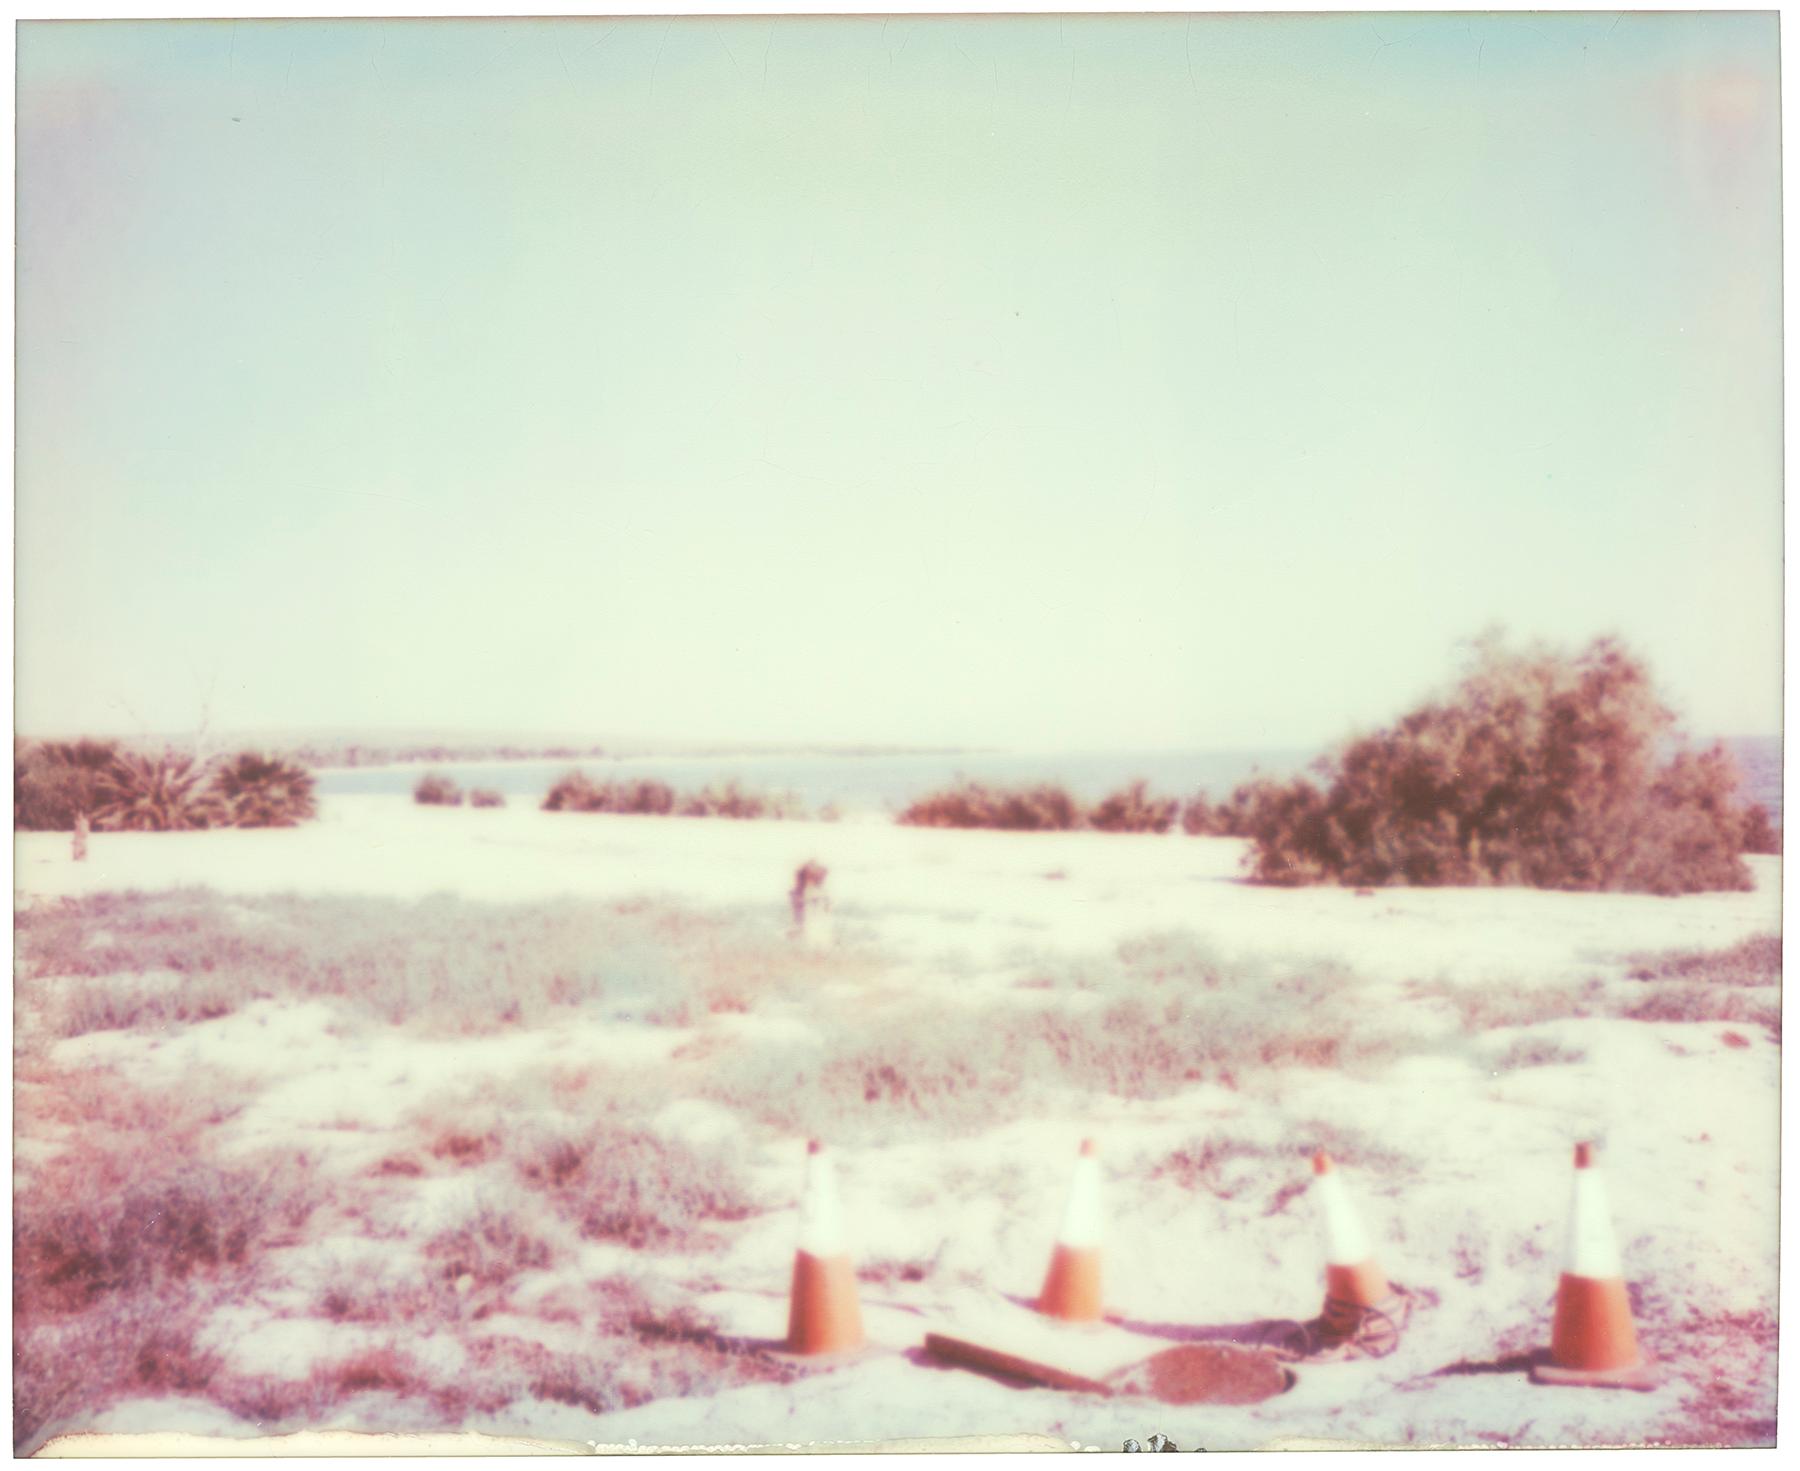 Stefanie Schneider Landscape Photograph – Männer bei der Arbeit (Kalifornien Badlands)